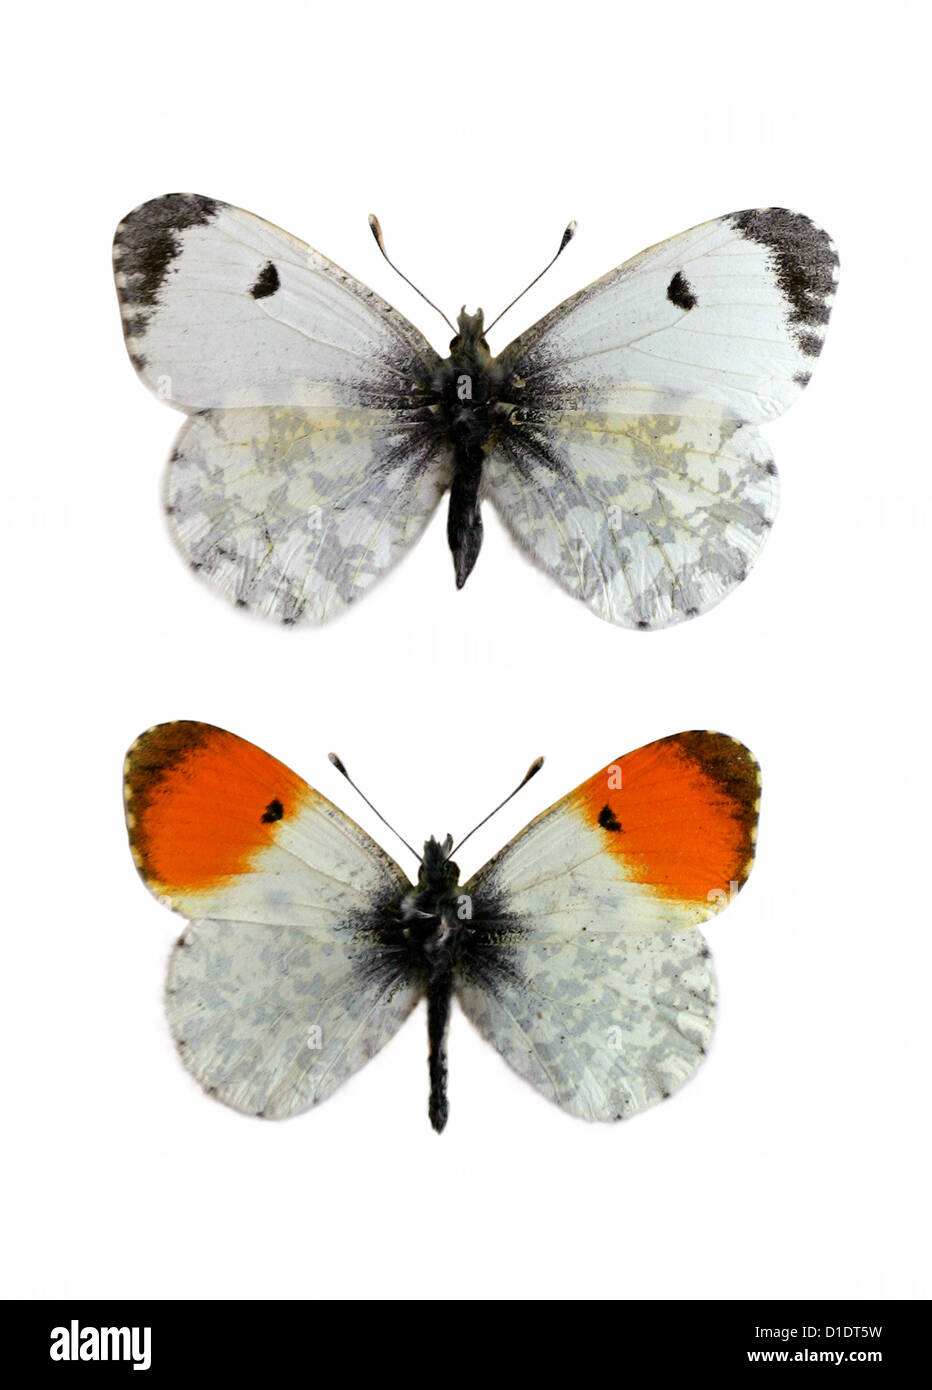 Pointe-Orange, papillons Anthocharis cardamines, Pieridae, de lépidoptères. Femelle (en haut), de sexe masculin (en bas). Mounted specimens. Découpe. Banque D'Images